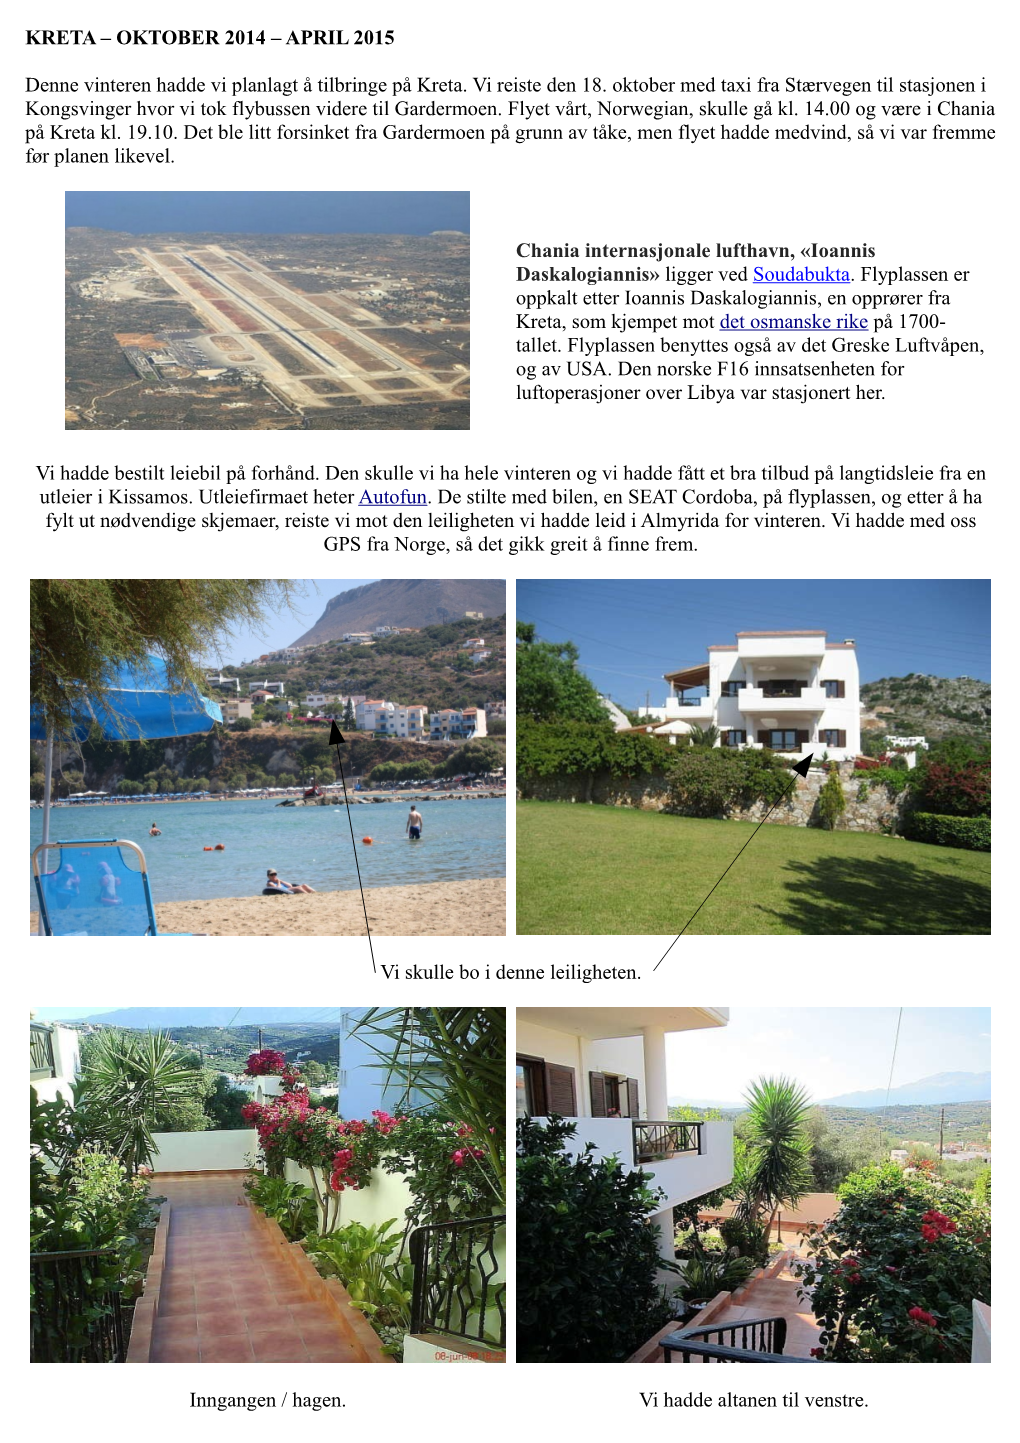 APRIL 2015 Denne Vinteren Hadde Vi Planlagt Å Tilbringe På Kreta. Vi Reiste Den 18. Oktober Med